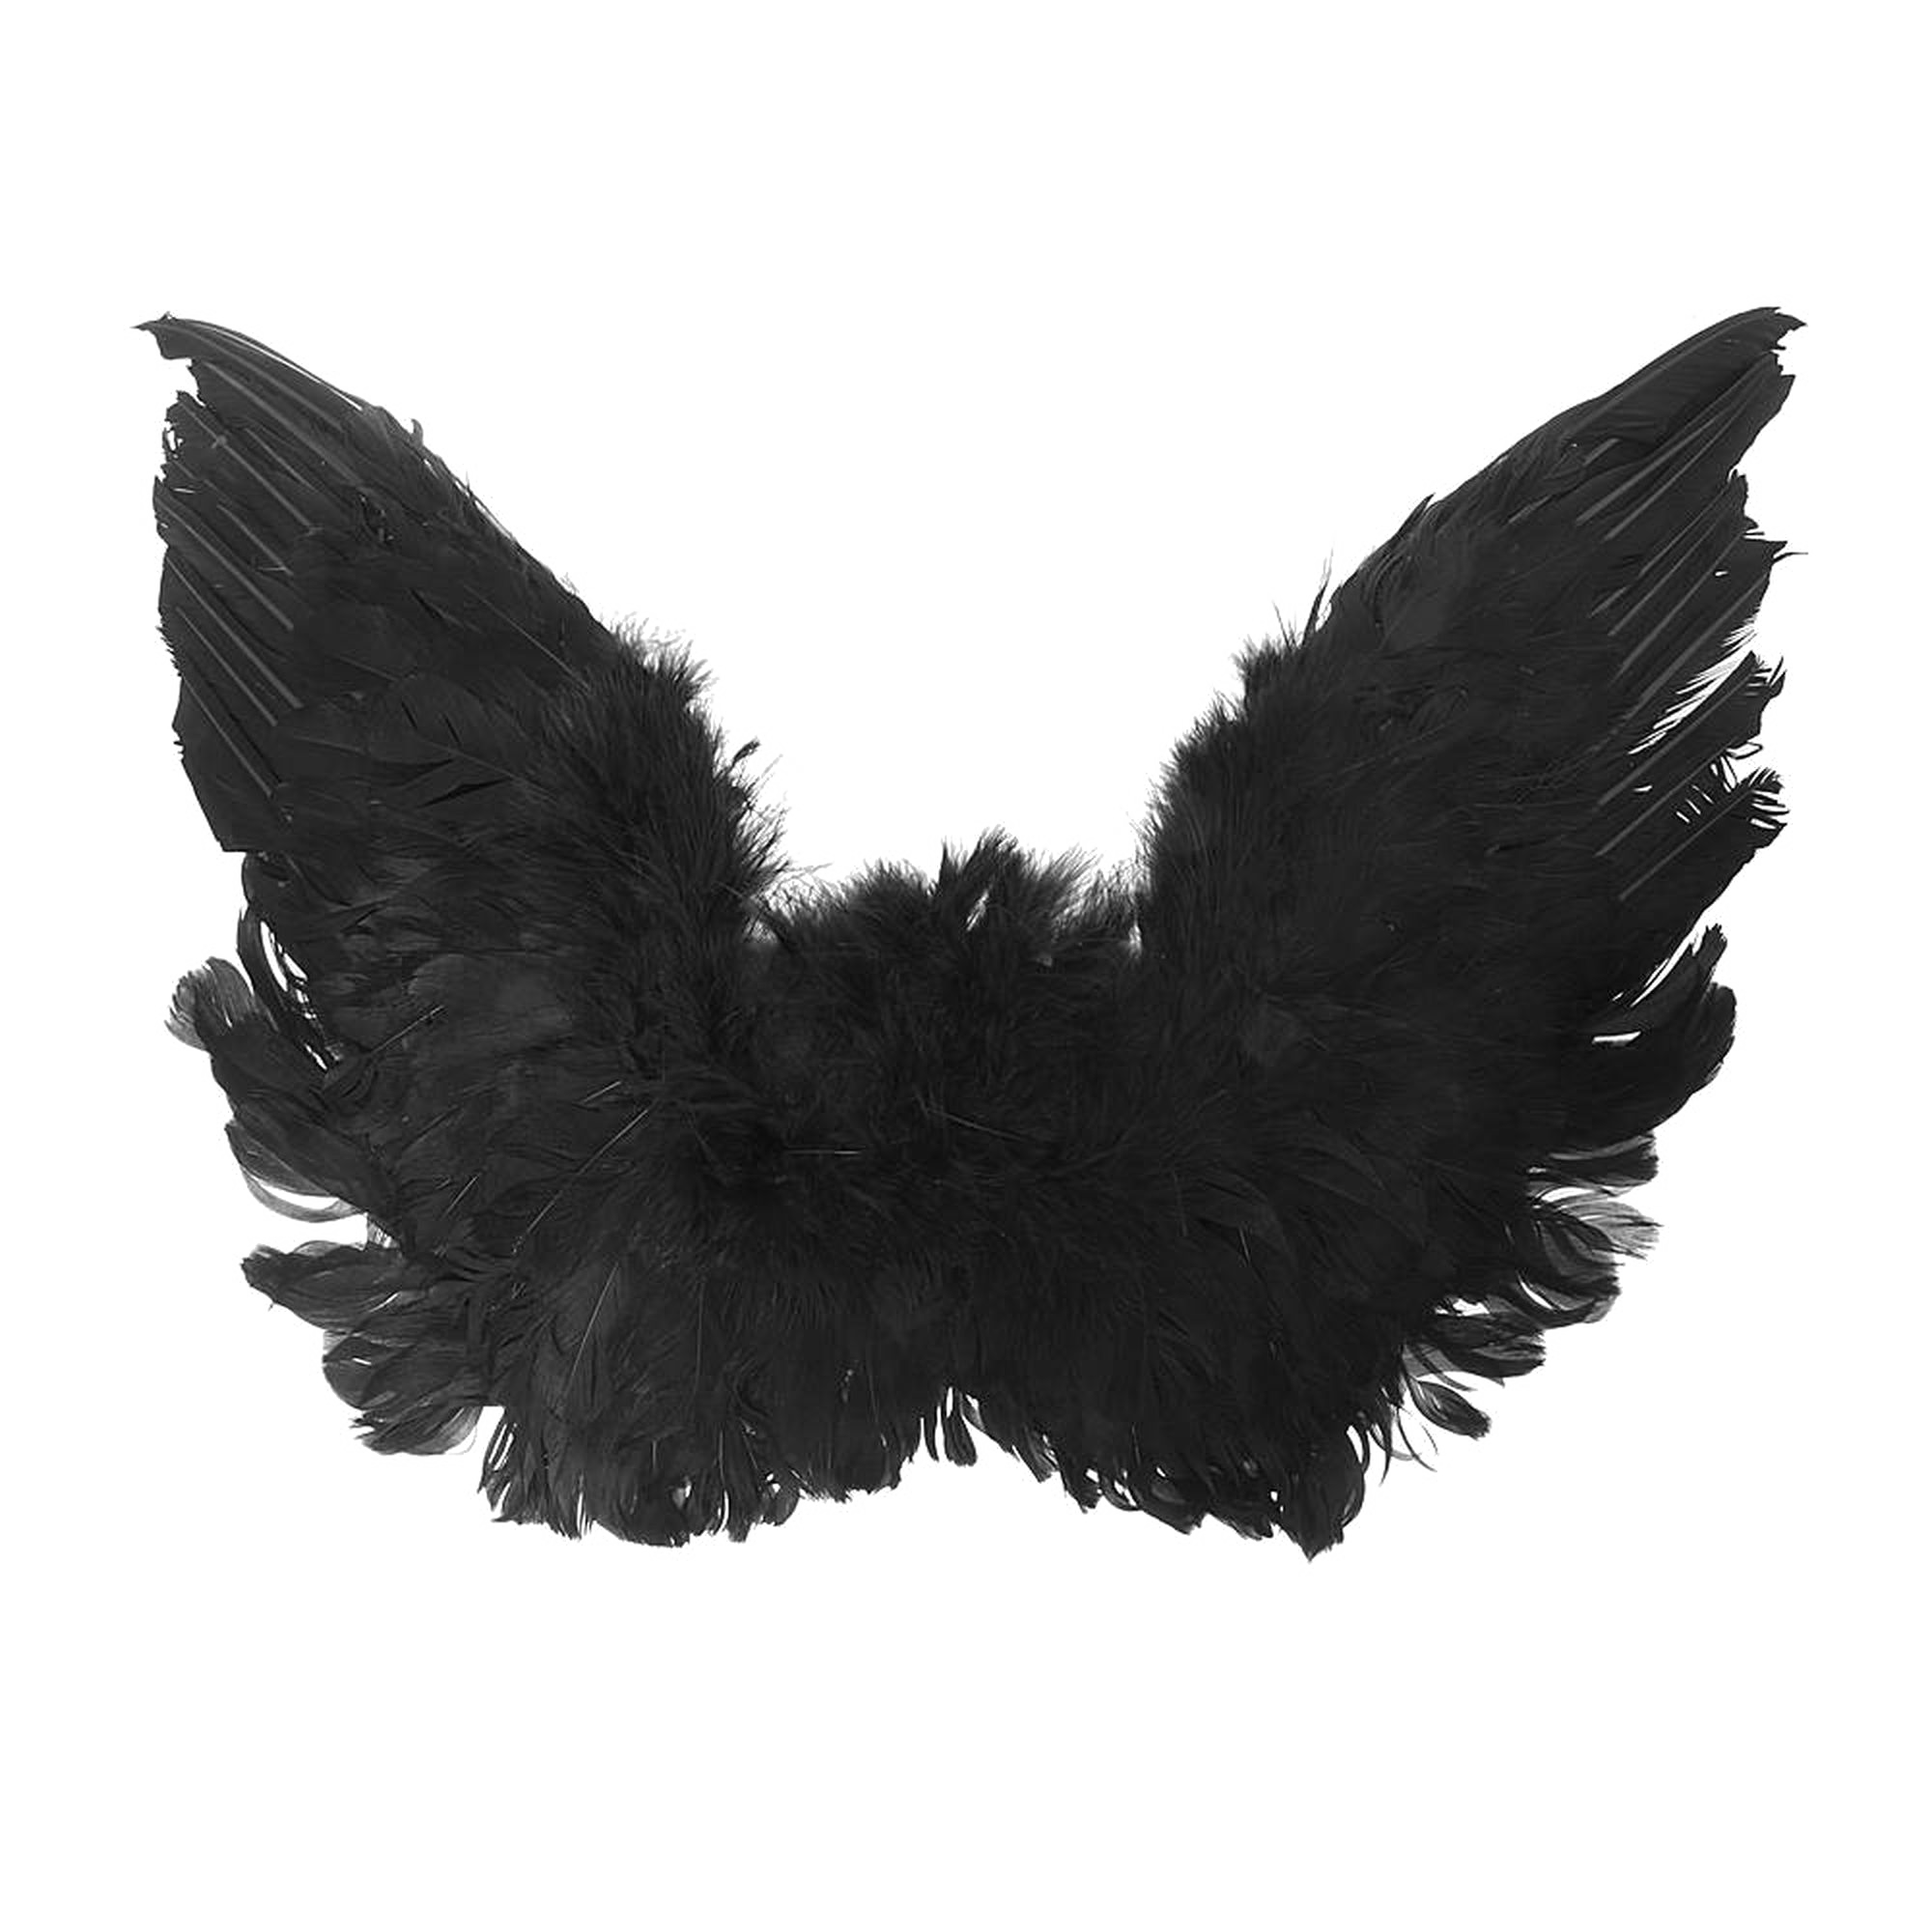 Black Angel Wings PNG Gambar berkualitas tinggi